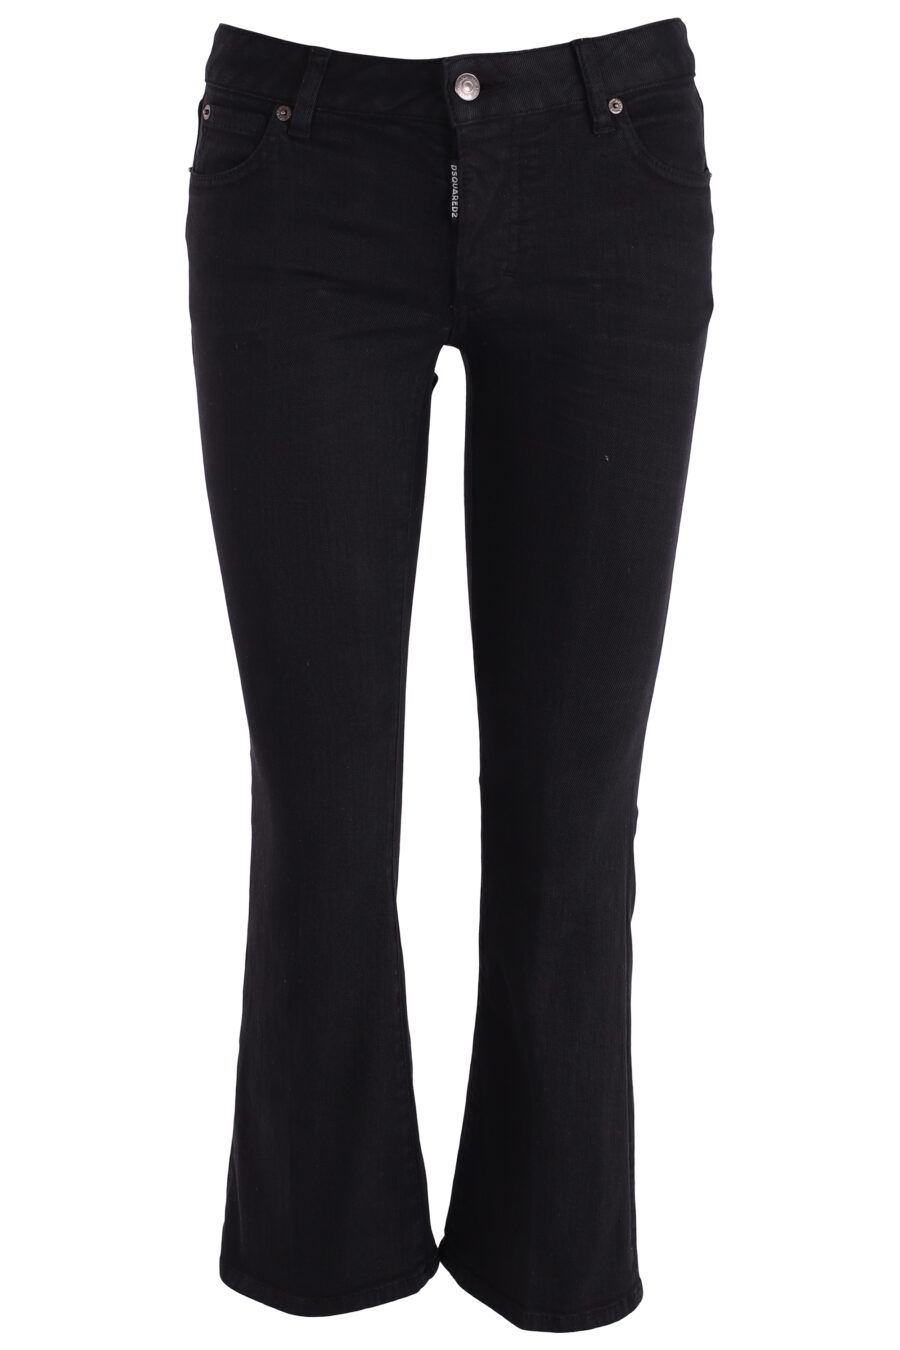 Jeans mit Schlaghose schwarz - IMG 3731